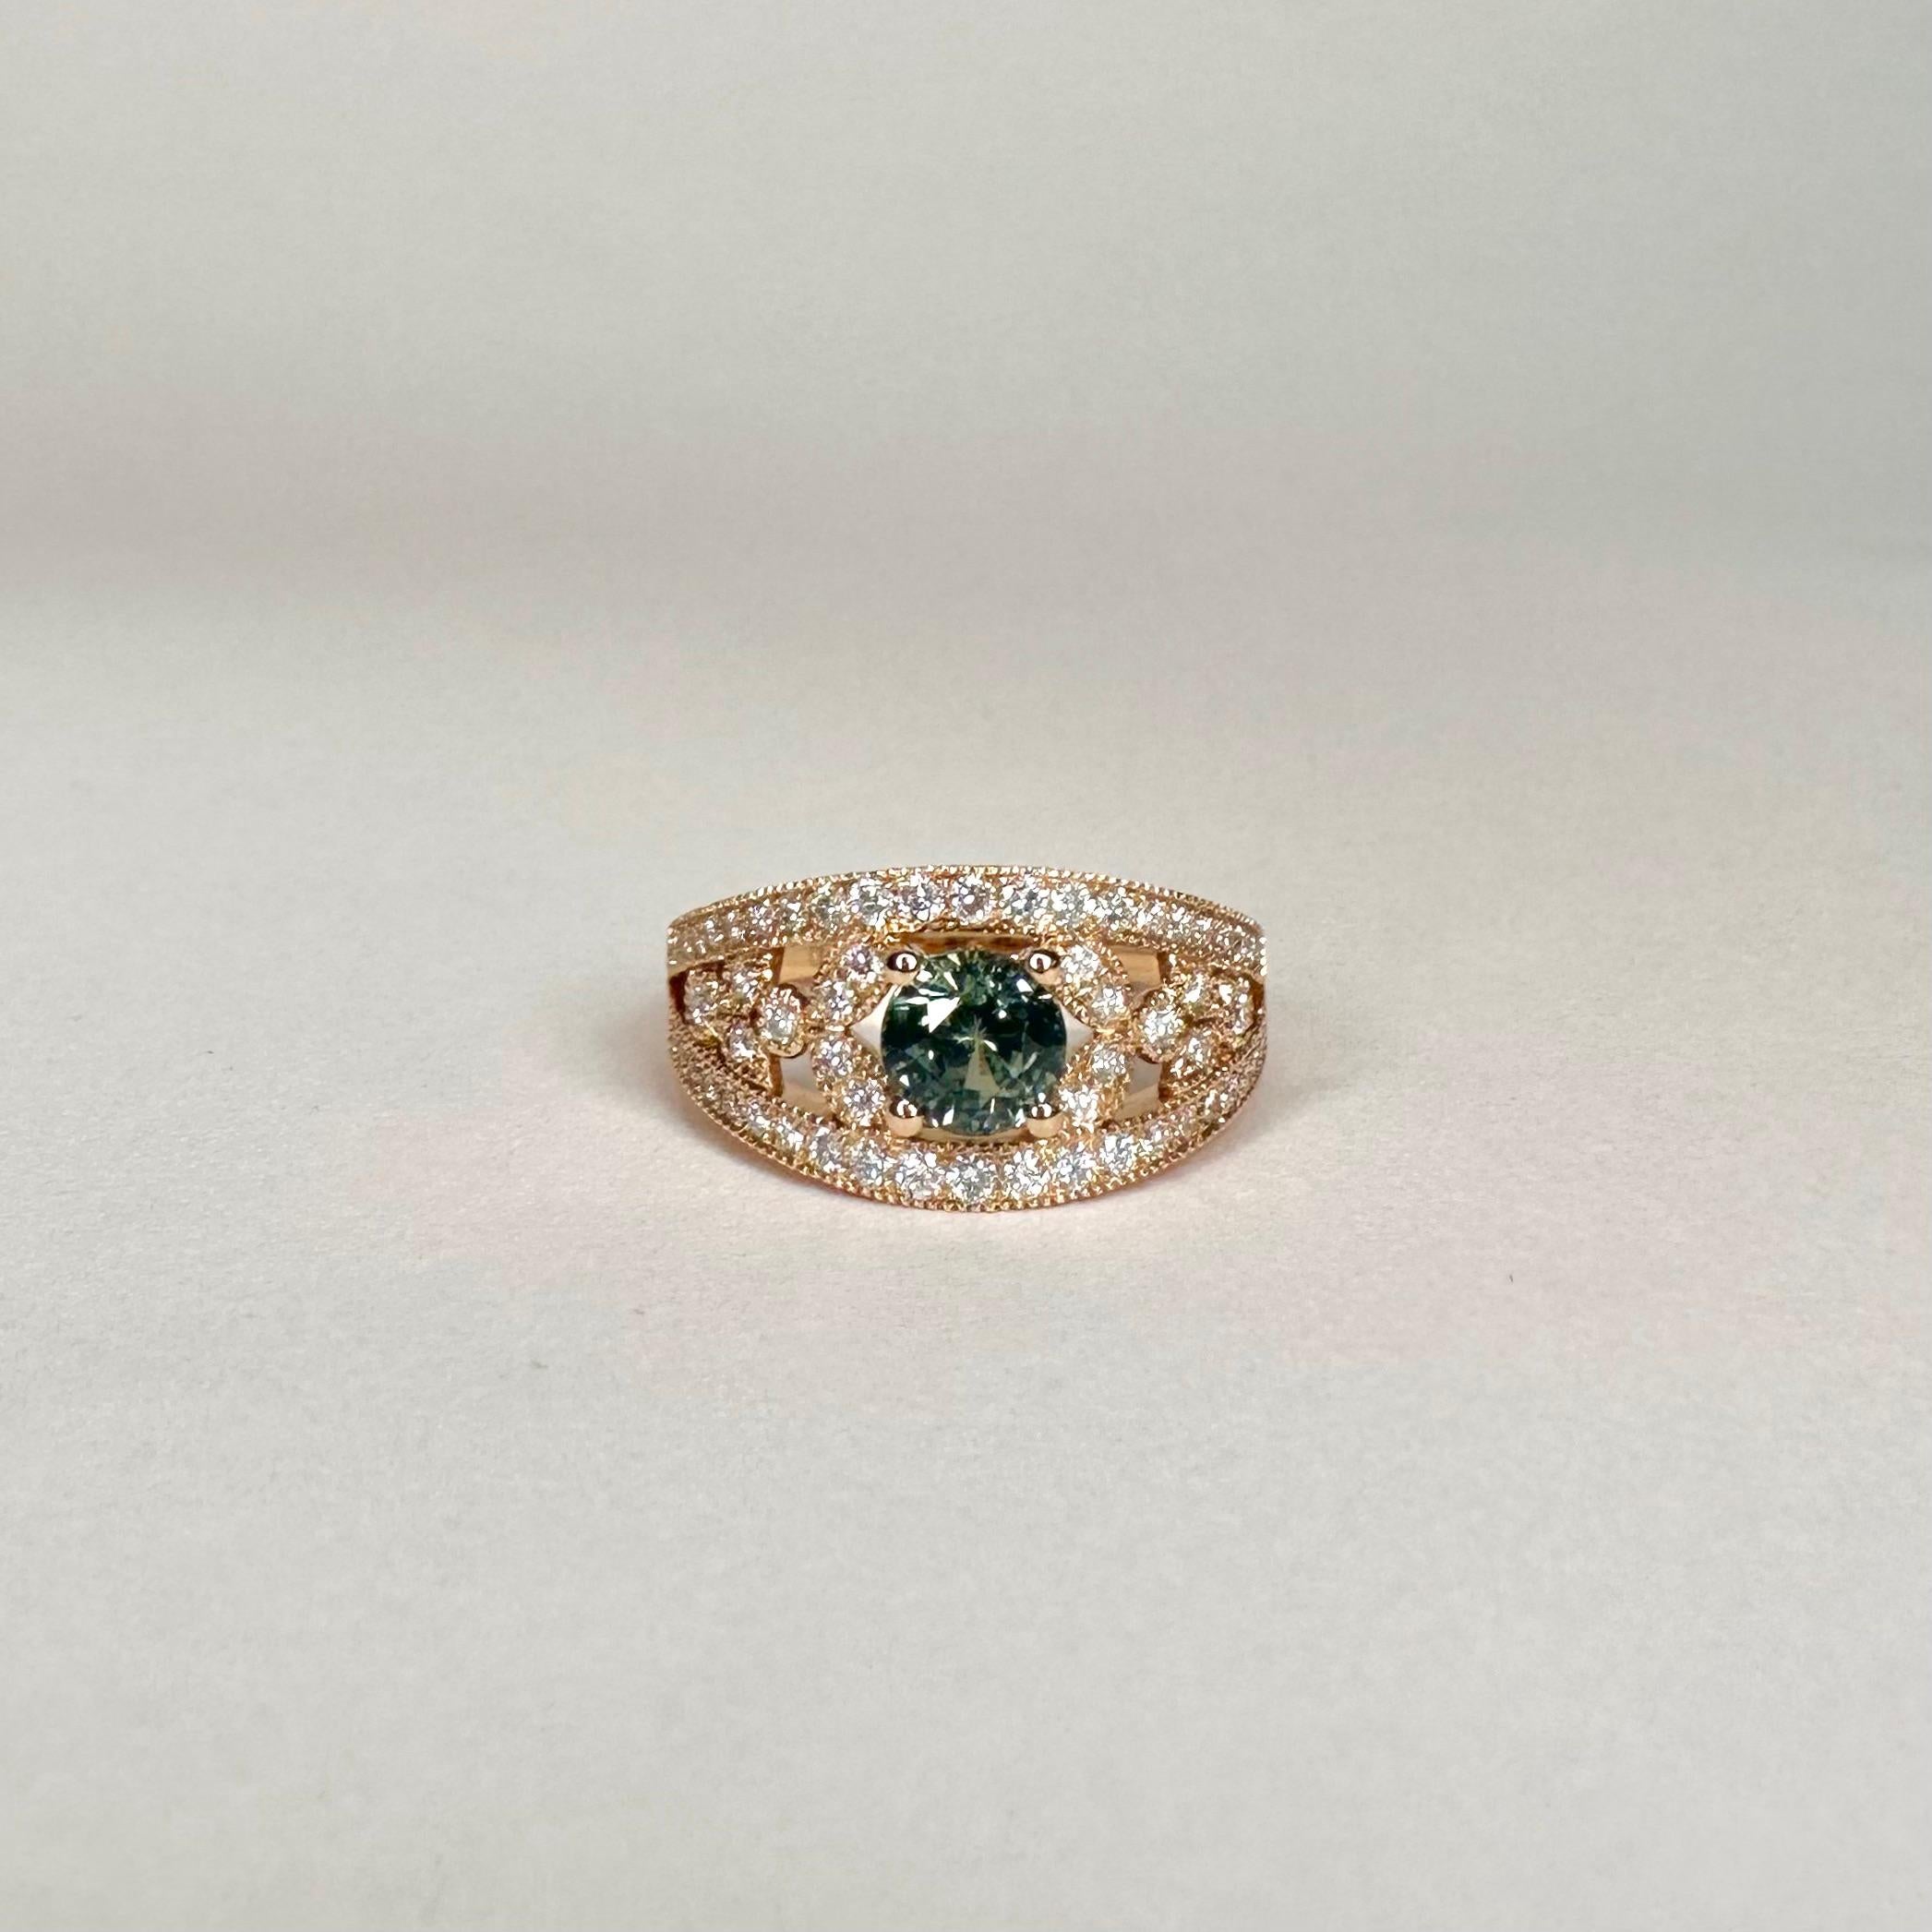 For Sale:  18k Rose Gold Laurel Leaf Design Blue Green Sapphire Ring Set with Diamonds 2